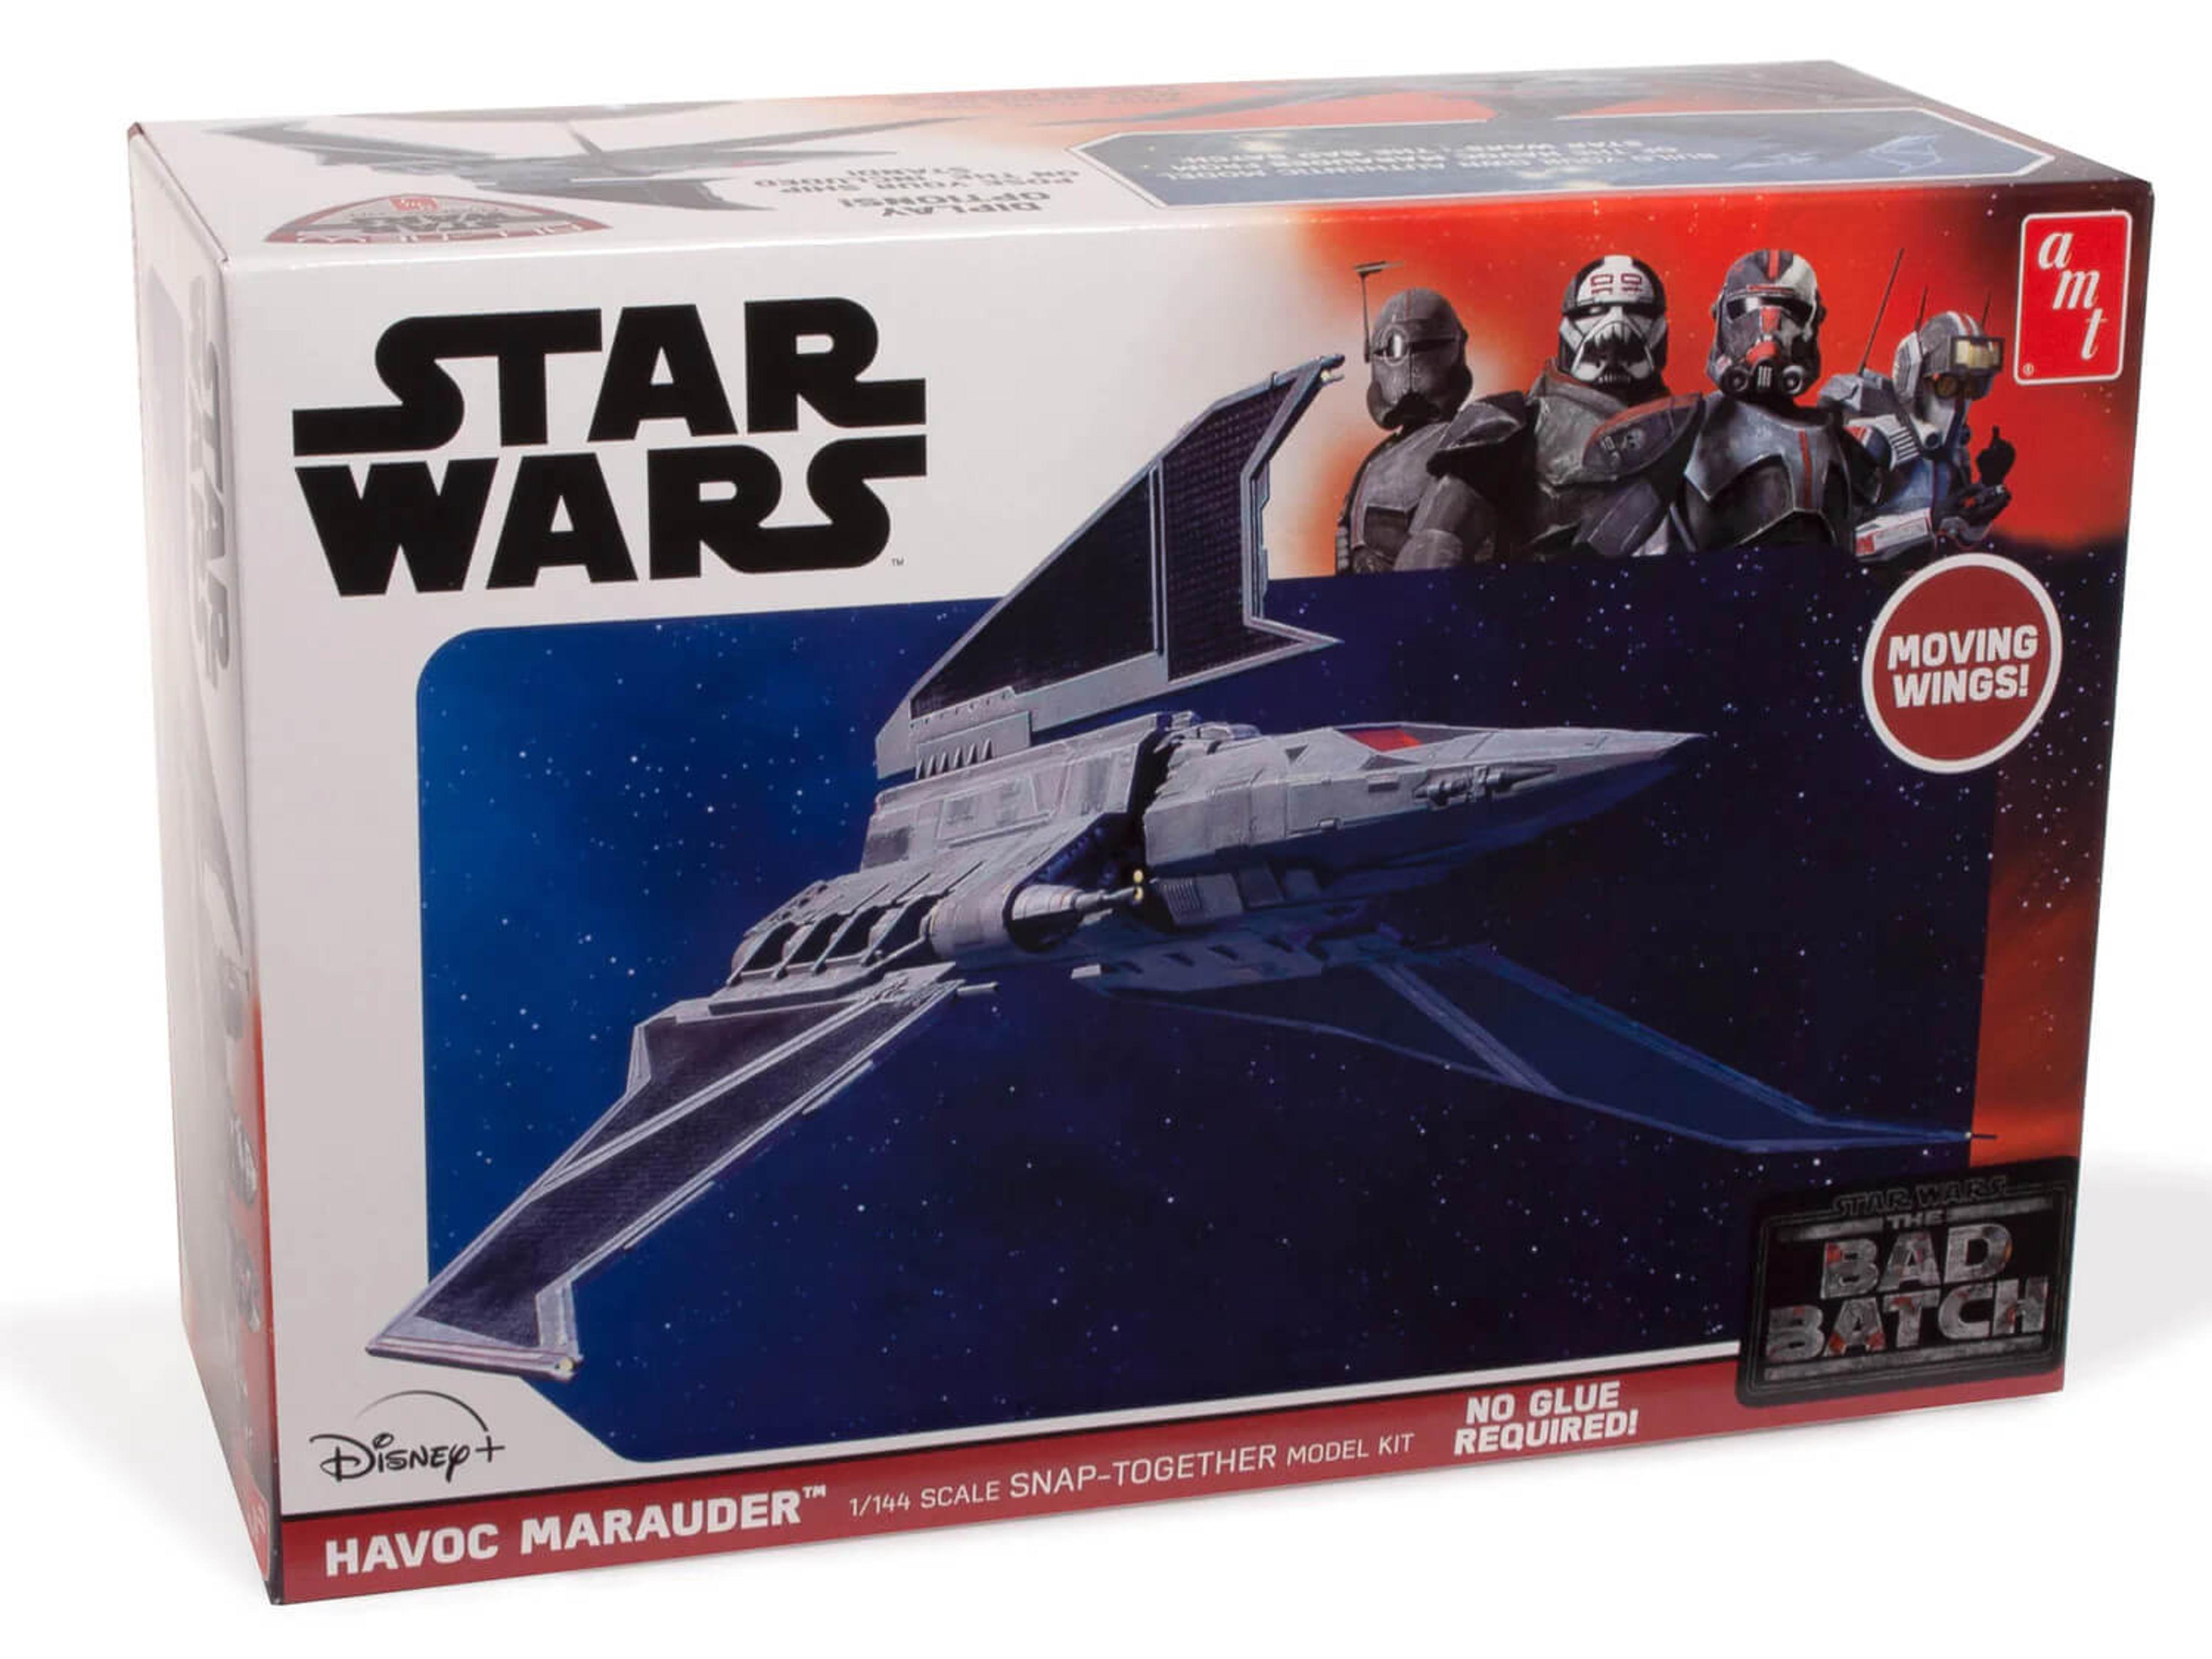 1/144 Star Wars: The Bad Batch Havoc Marauder Model Kit